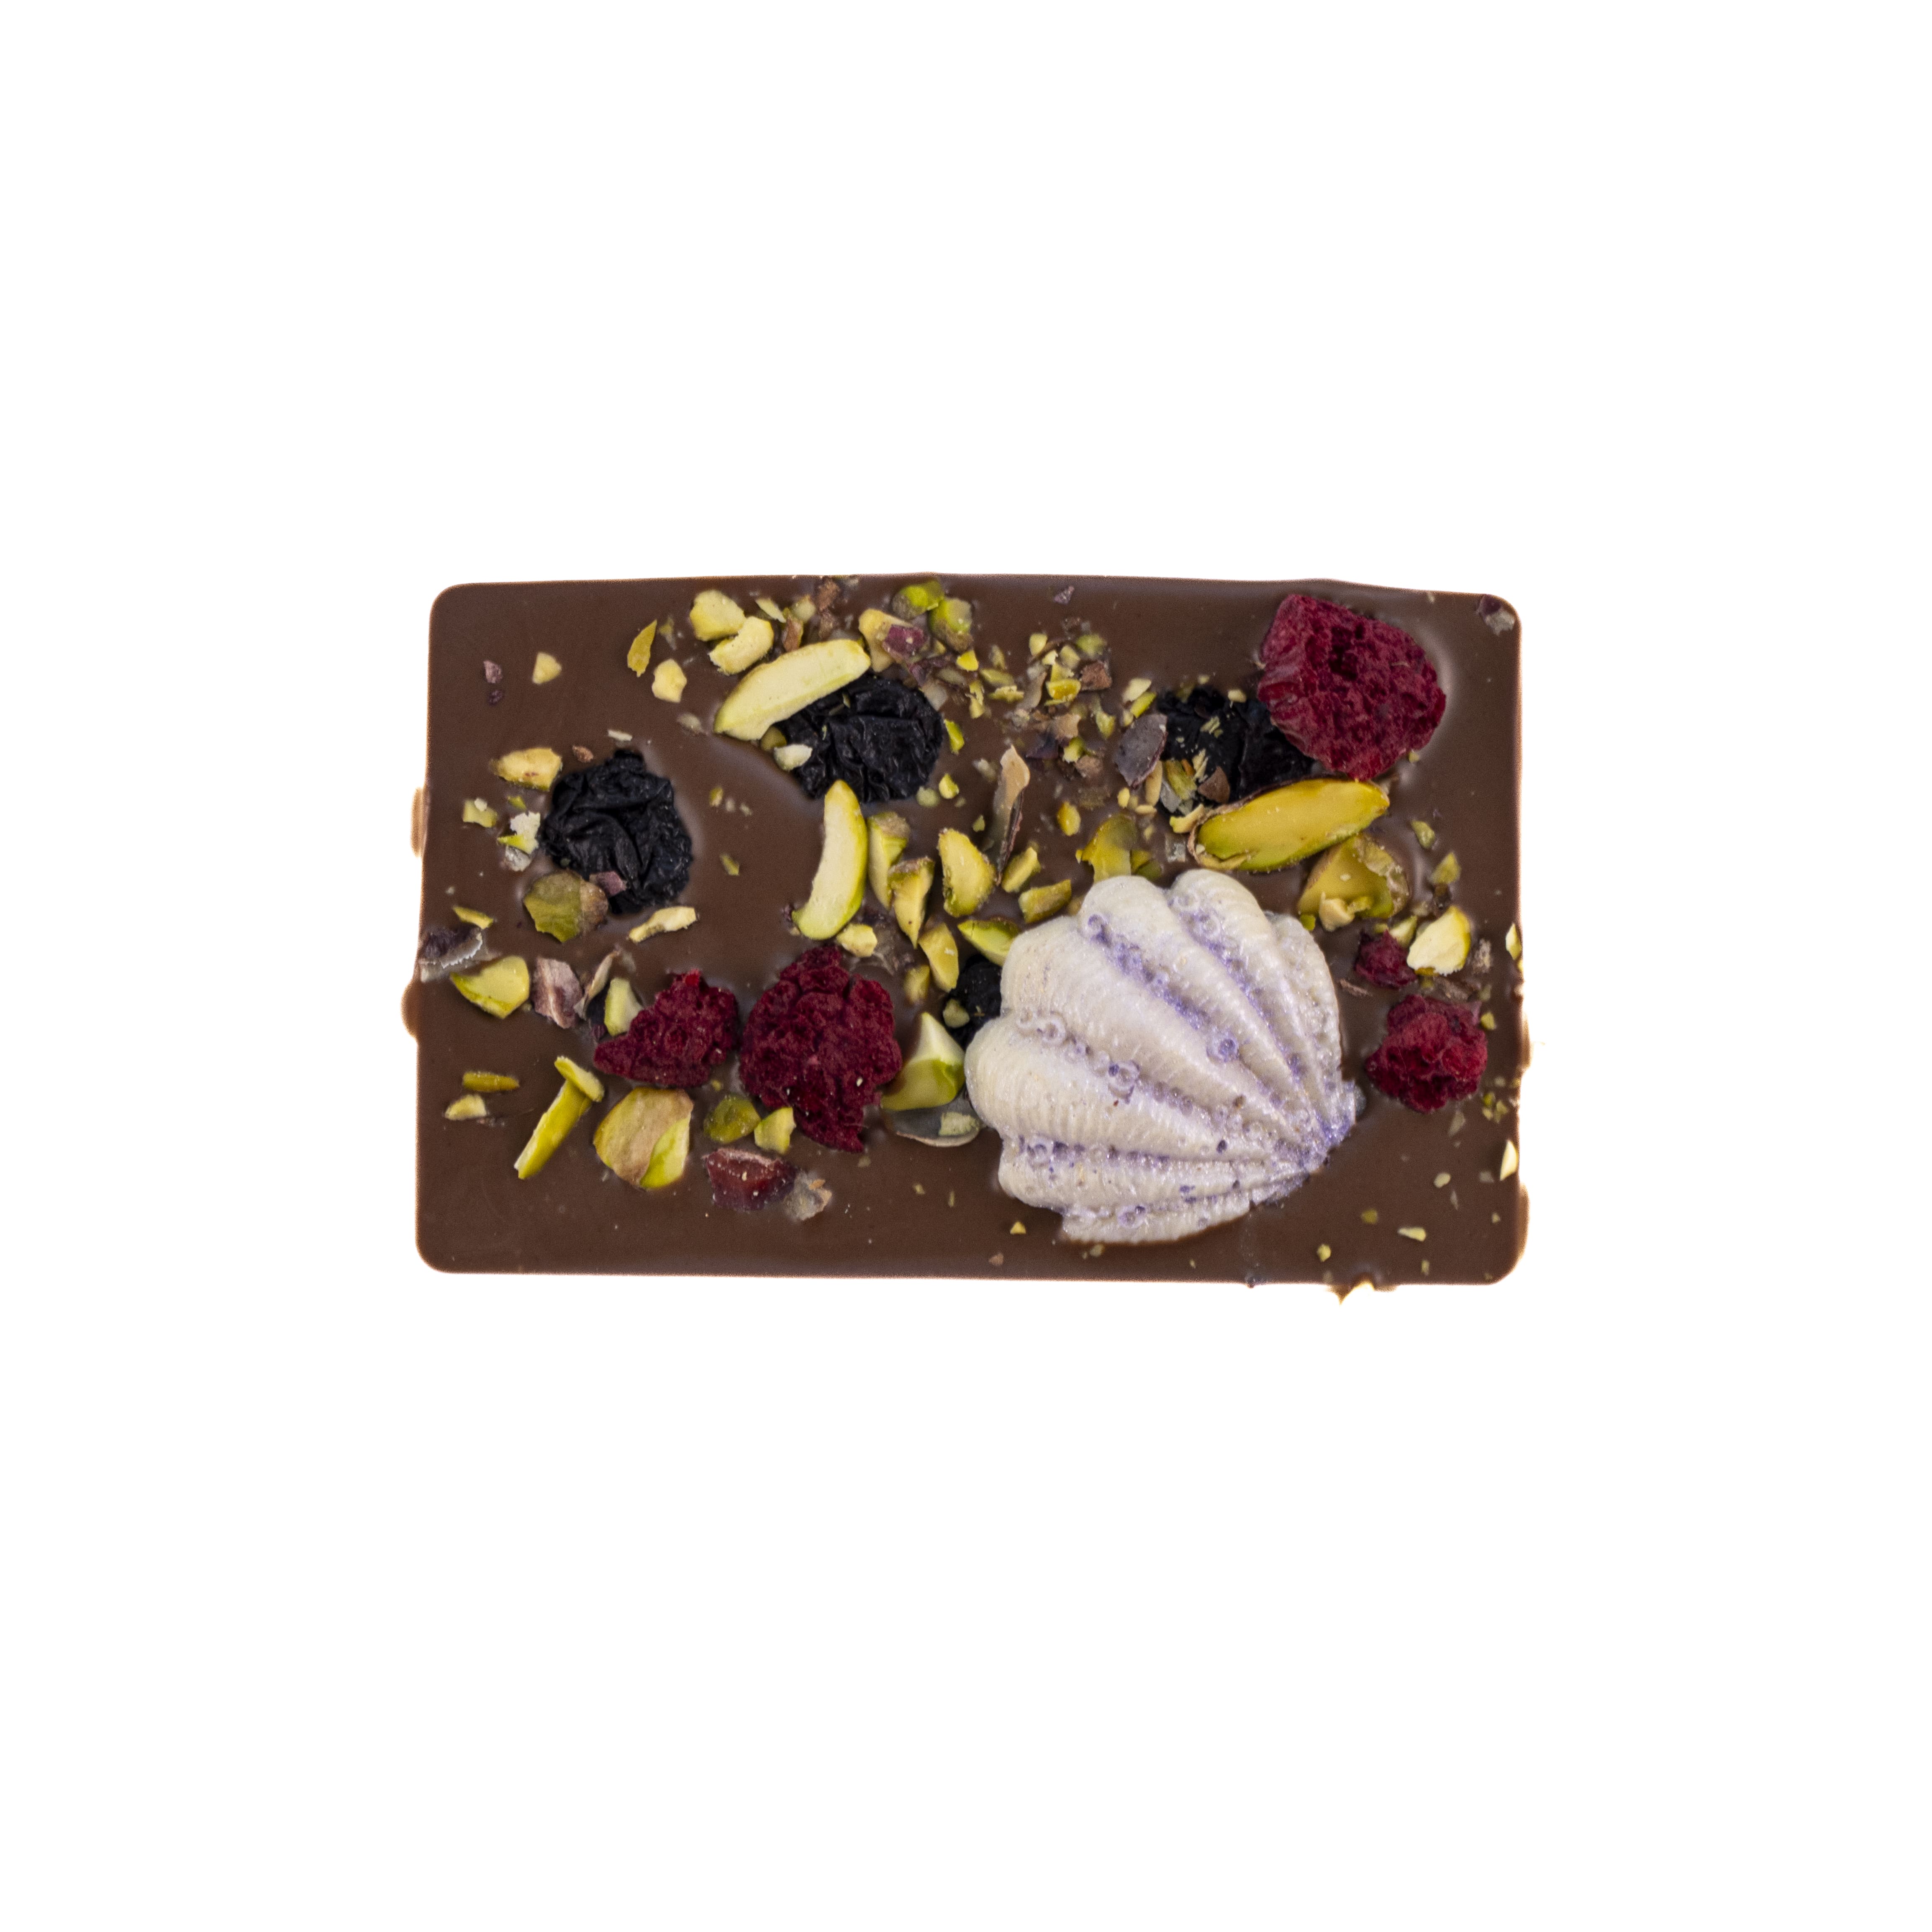 Sjokoladeplate 14 | Kjøbmandsgaarden Chocolate